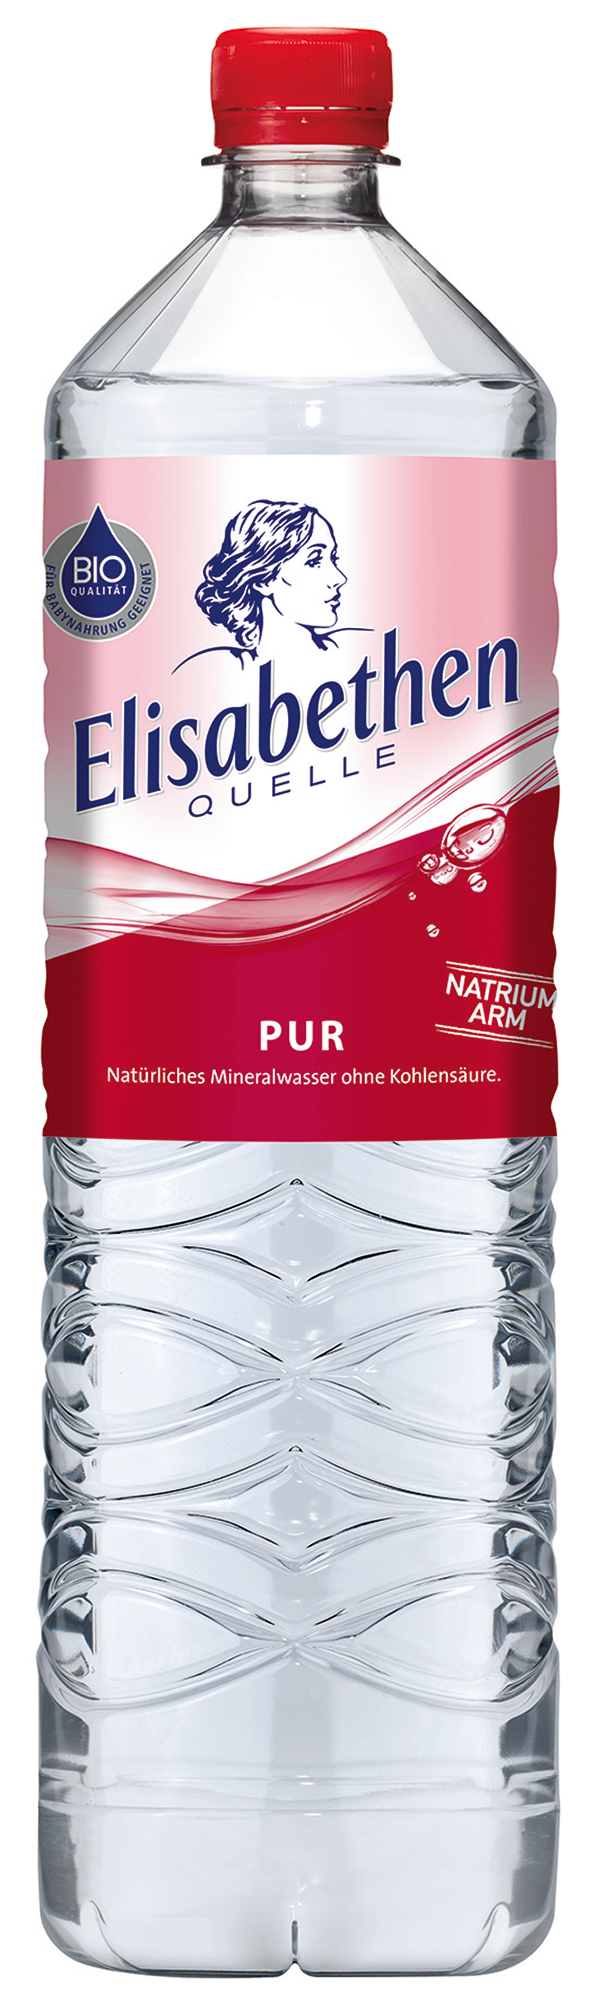 Elisabethen Quelle Pur Bio Mineralwasser  6 x 1,5 l (PET)